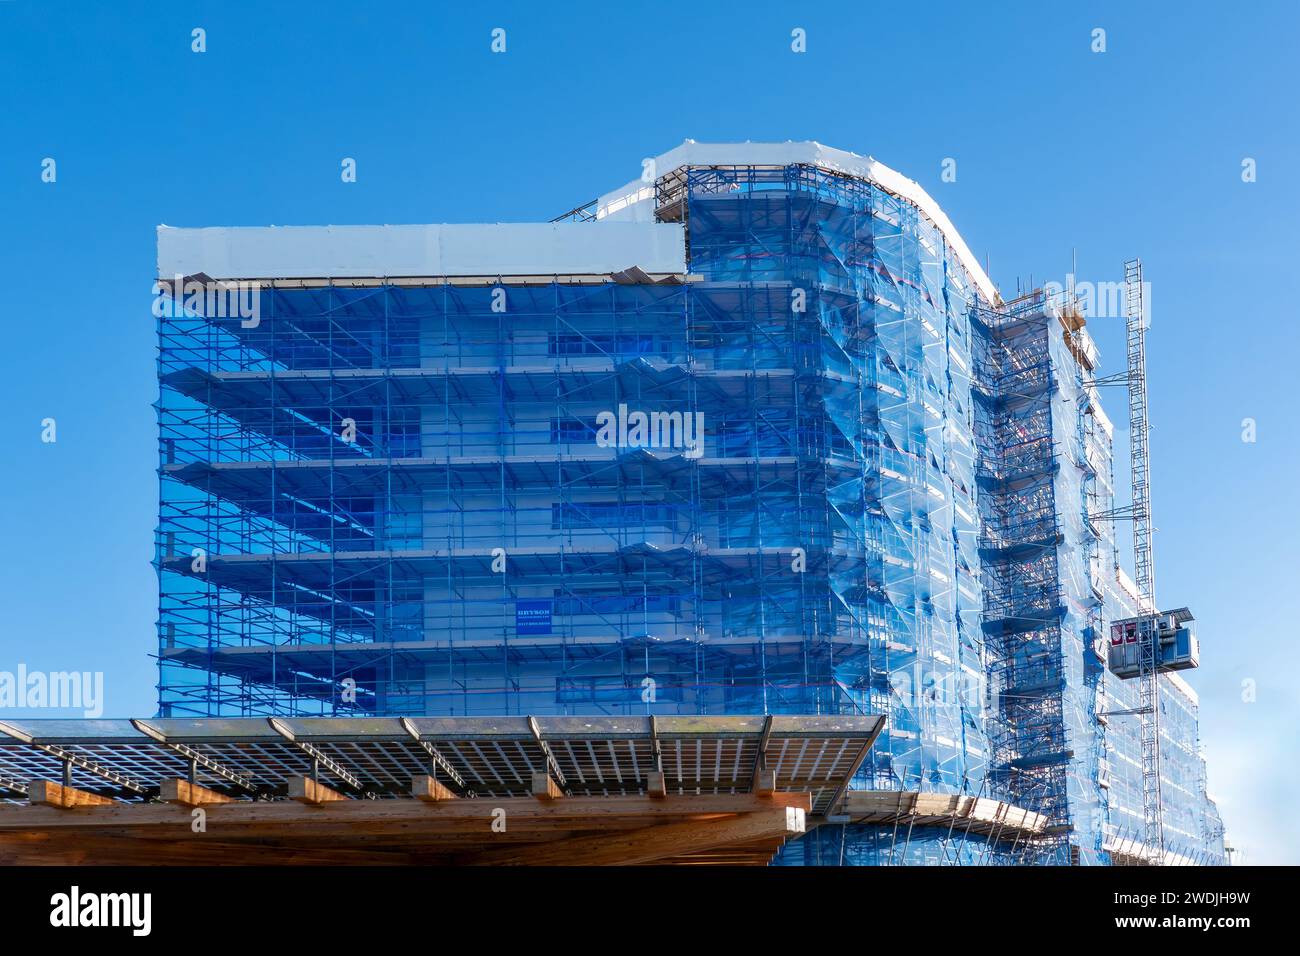 Portishead, Regno Unito: Un'ampia impalcatura coperta da rete blu posizionata intorno al blocco di appartamenti Mirage per facilitare la sostituzione del rivestimento esistente Foto Stock